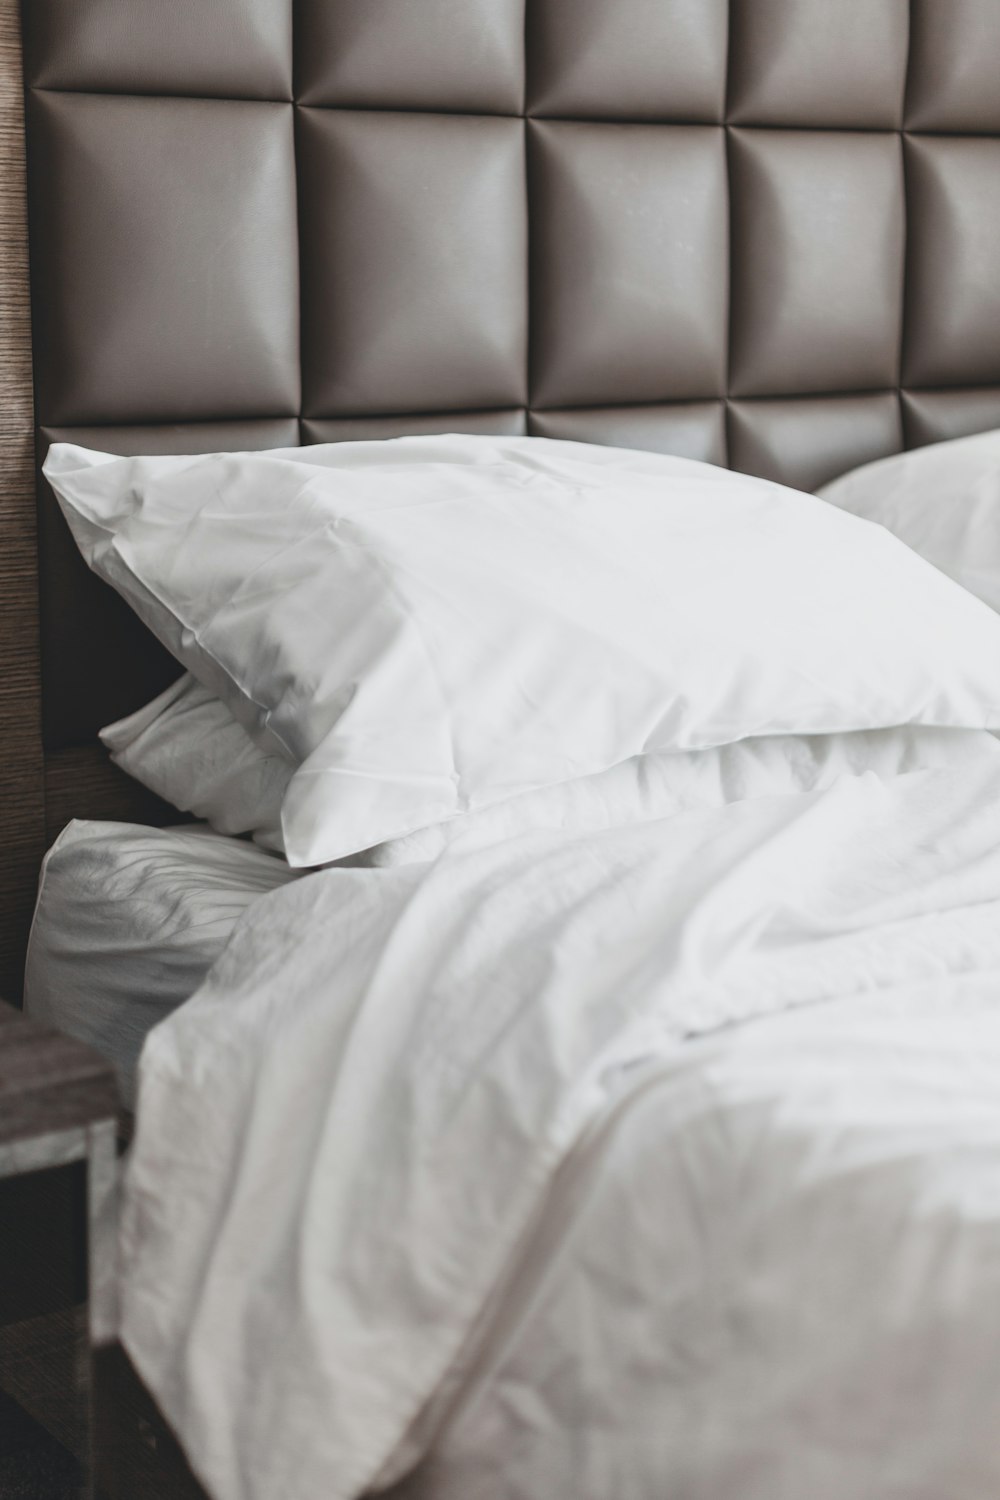 almohada de cama blanca en la cama